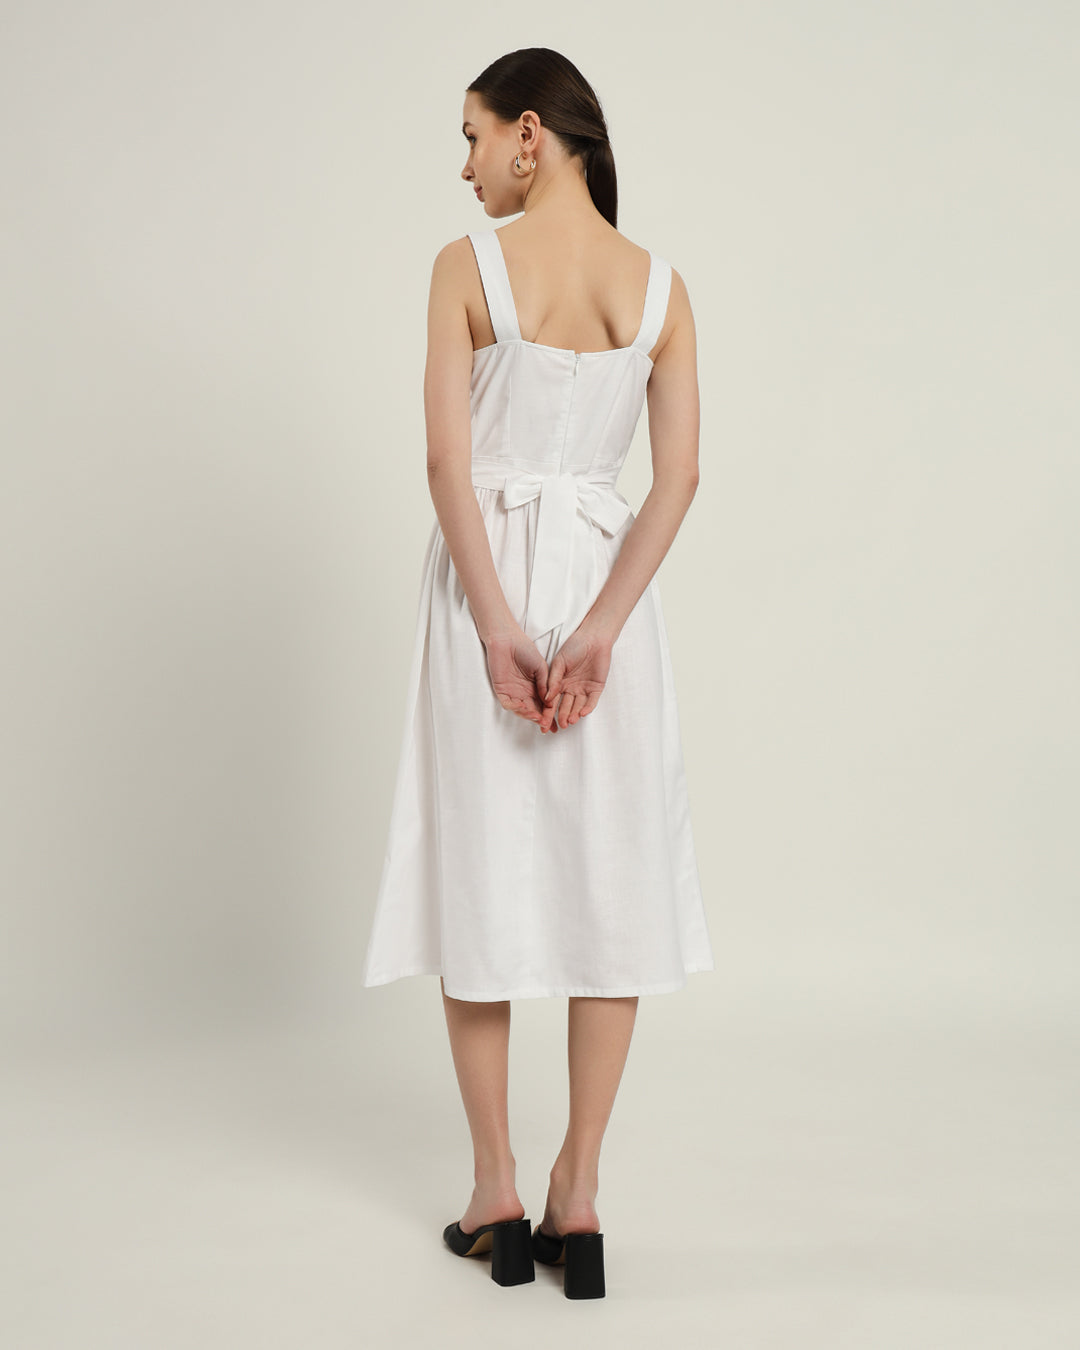 The Mihara Daisy White Linen Dress